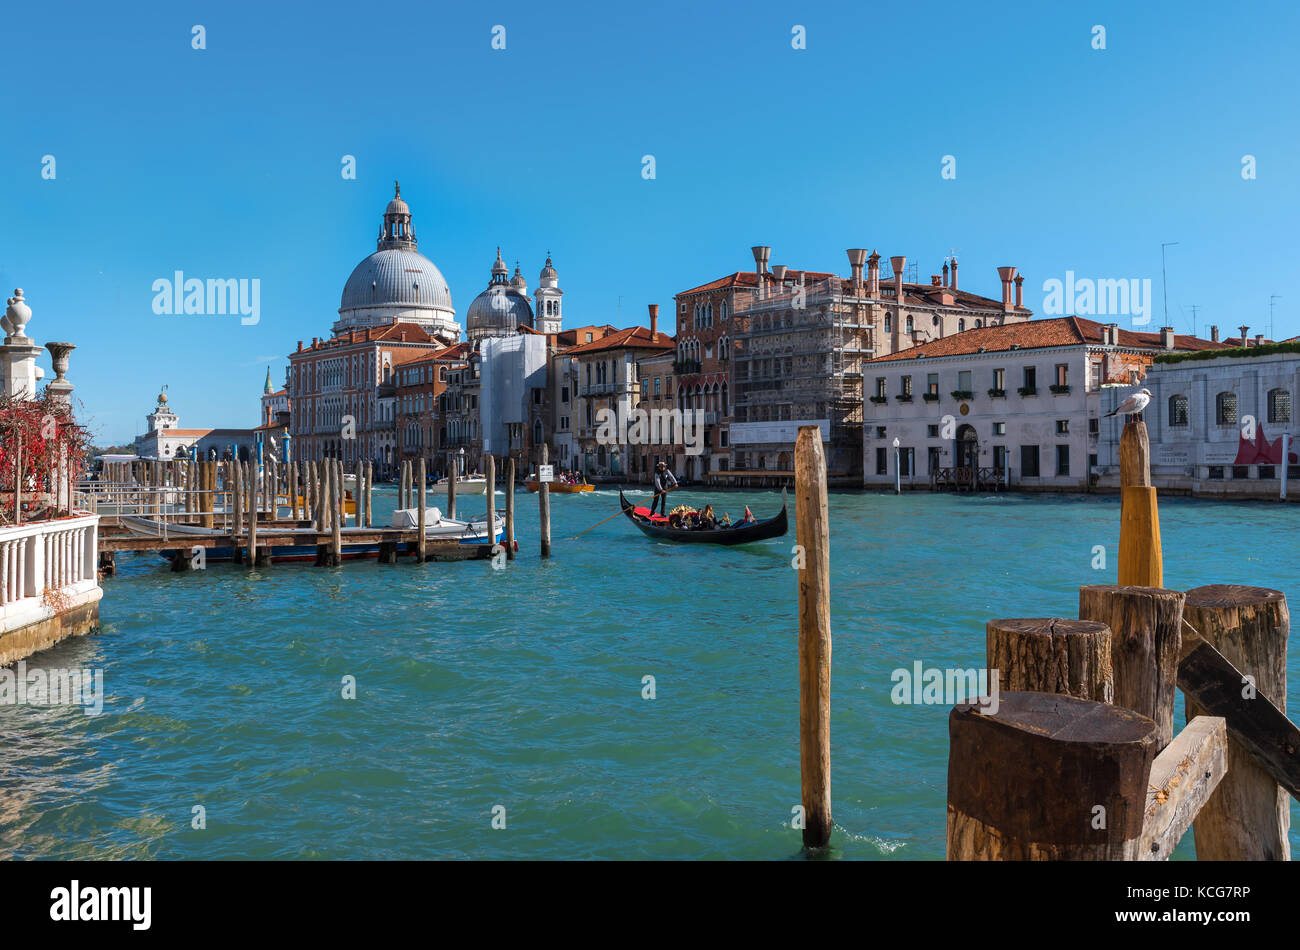 Venezia (Italia) - La città sul mare. La maggior parte dei luoghi più caratteristici della famosa città di mare, una delle principali attrazioni turistiche del mondo. Foto Stock